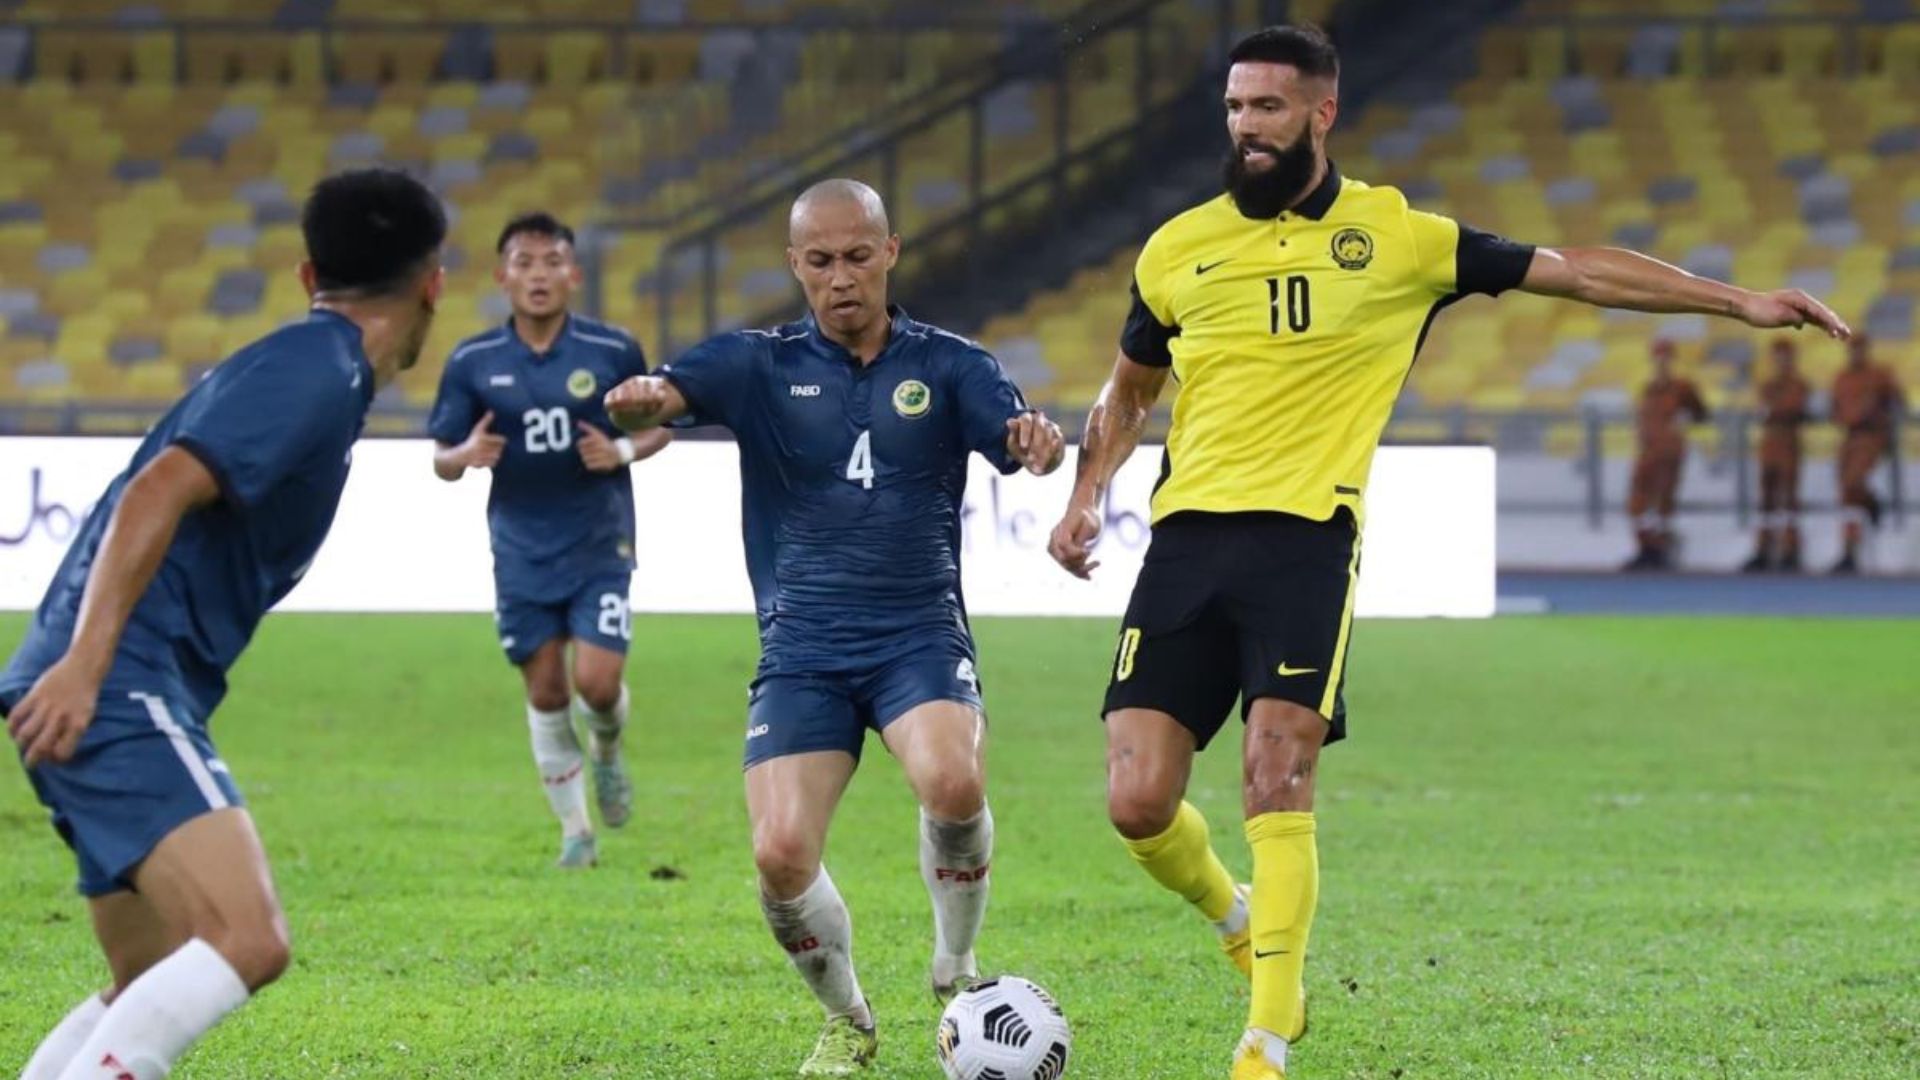 Liridon Krasniqi Tinggalkan Khon Kaen, Kembali Rancakkan Liga Malaysia?